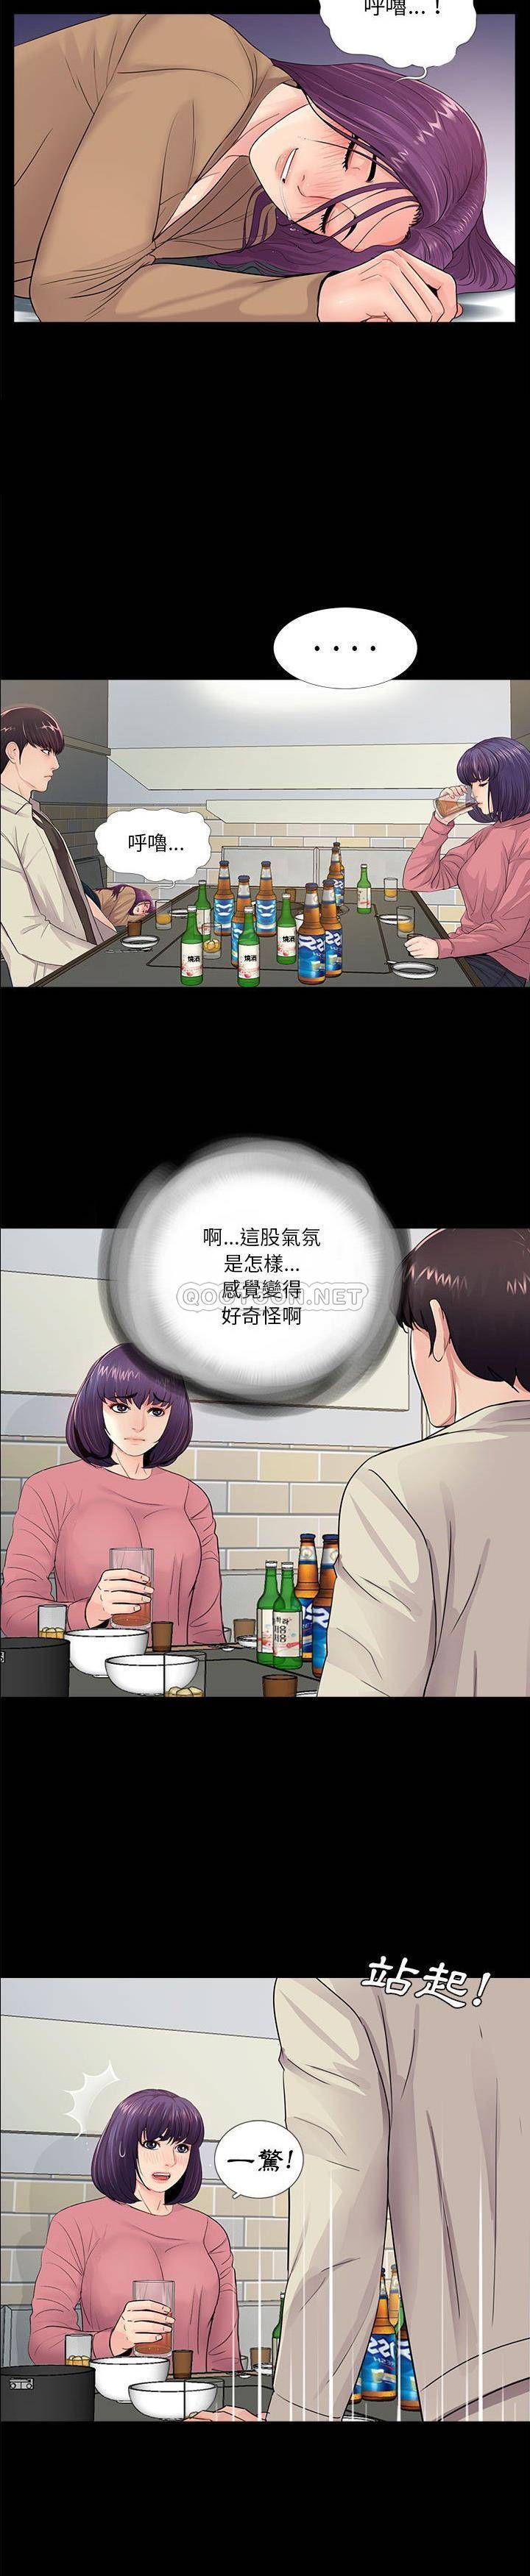 韩国污漫画 神秘復學生 第14话 20